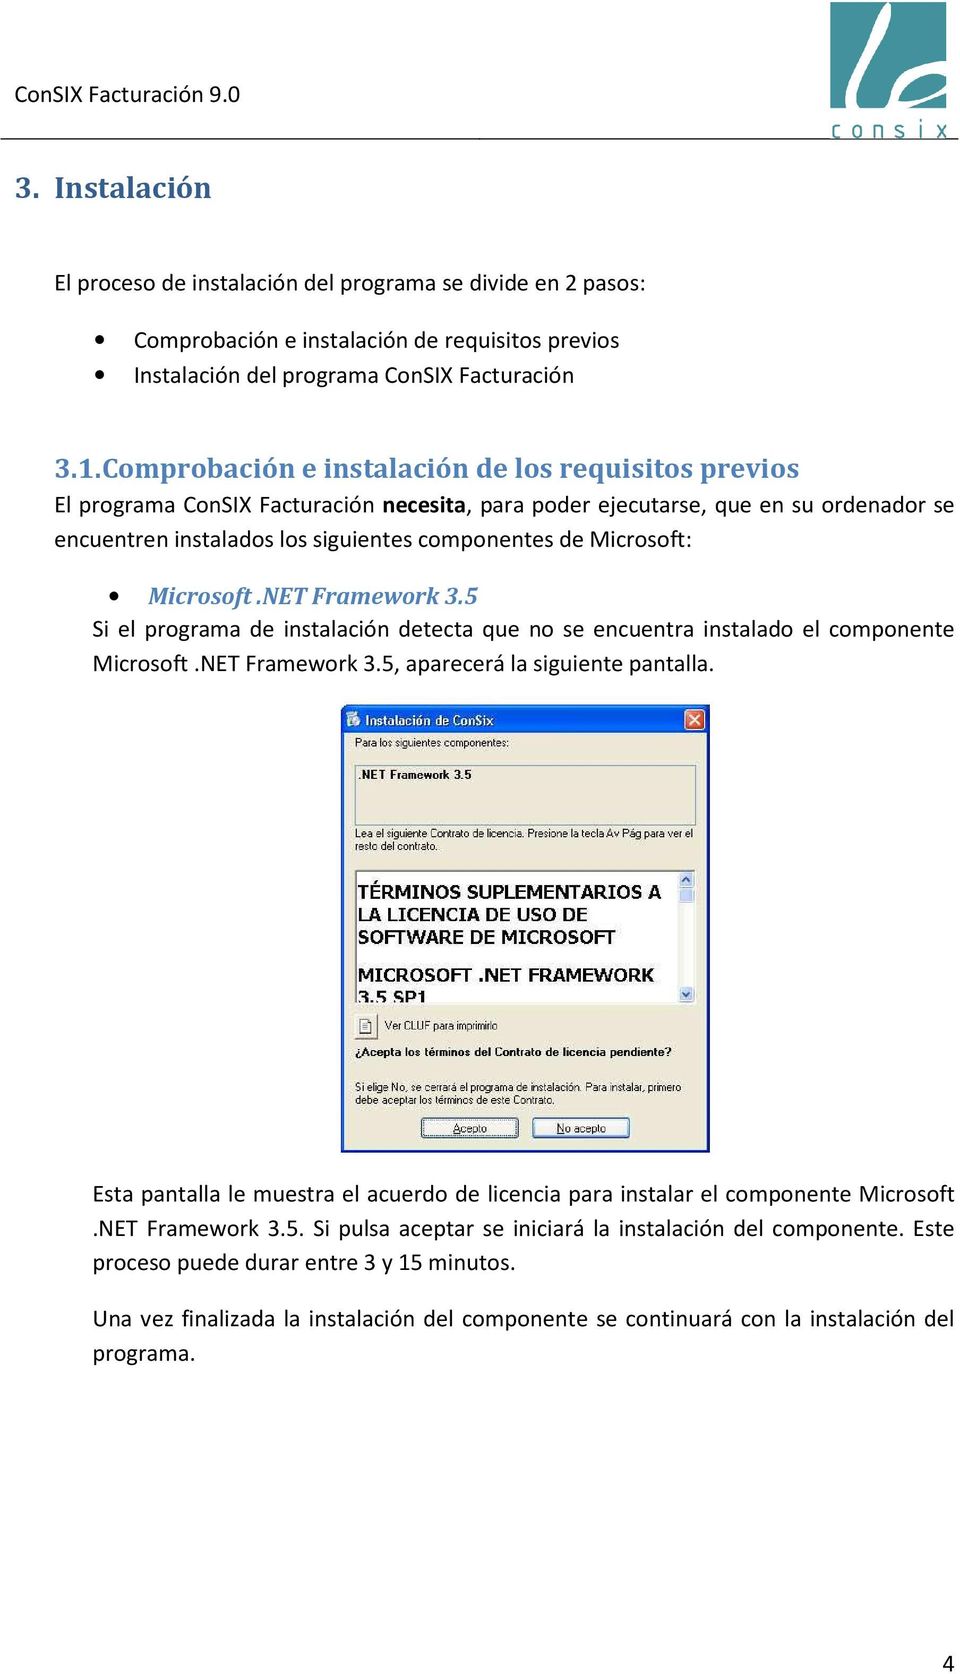 Microsoft: Microsoft.NET Framework 3.5 Si el programa de instalación detecta que no se encuentra instalado el componente Microsoft.NET Framework 3.5, aparecerá la siguiente pantalla.